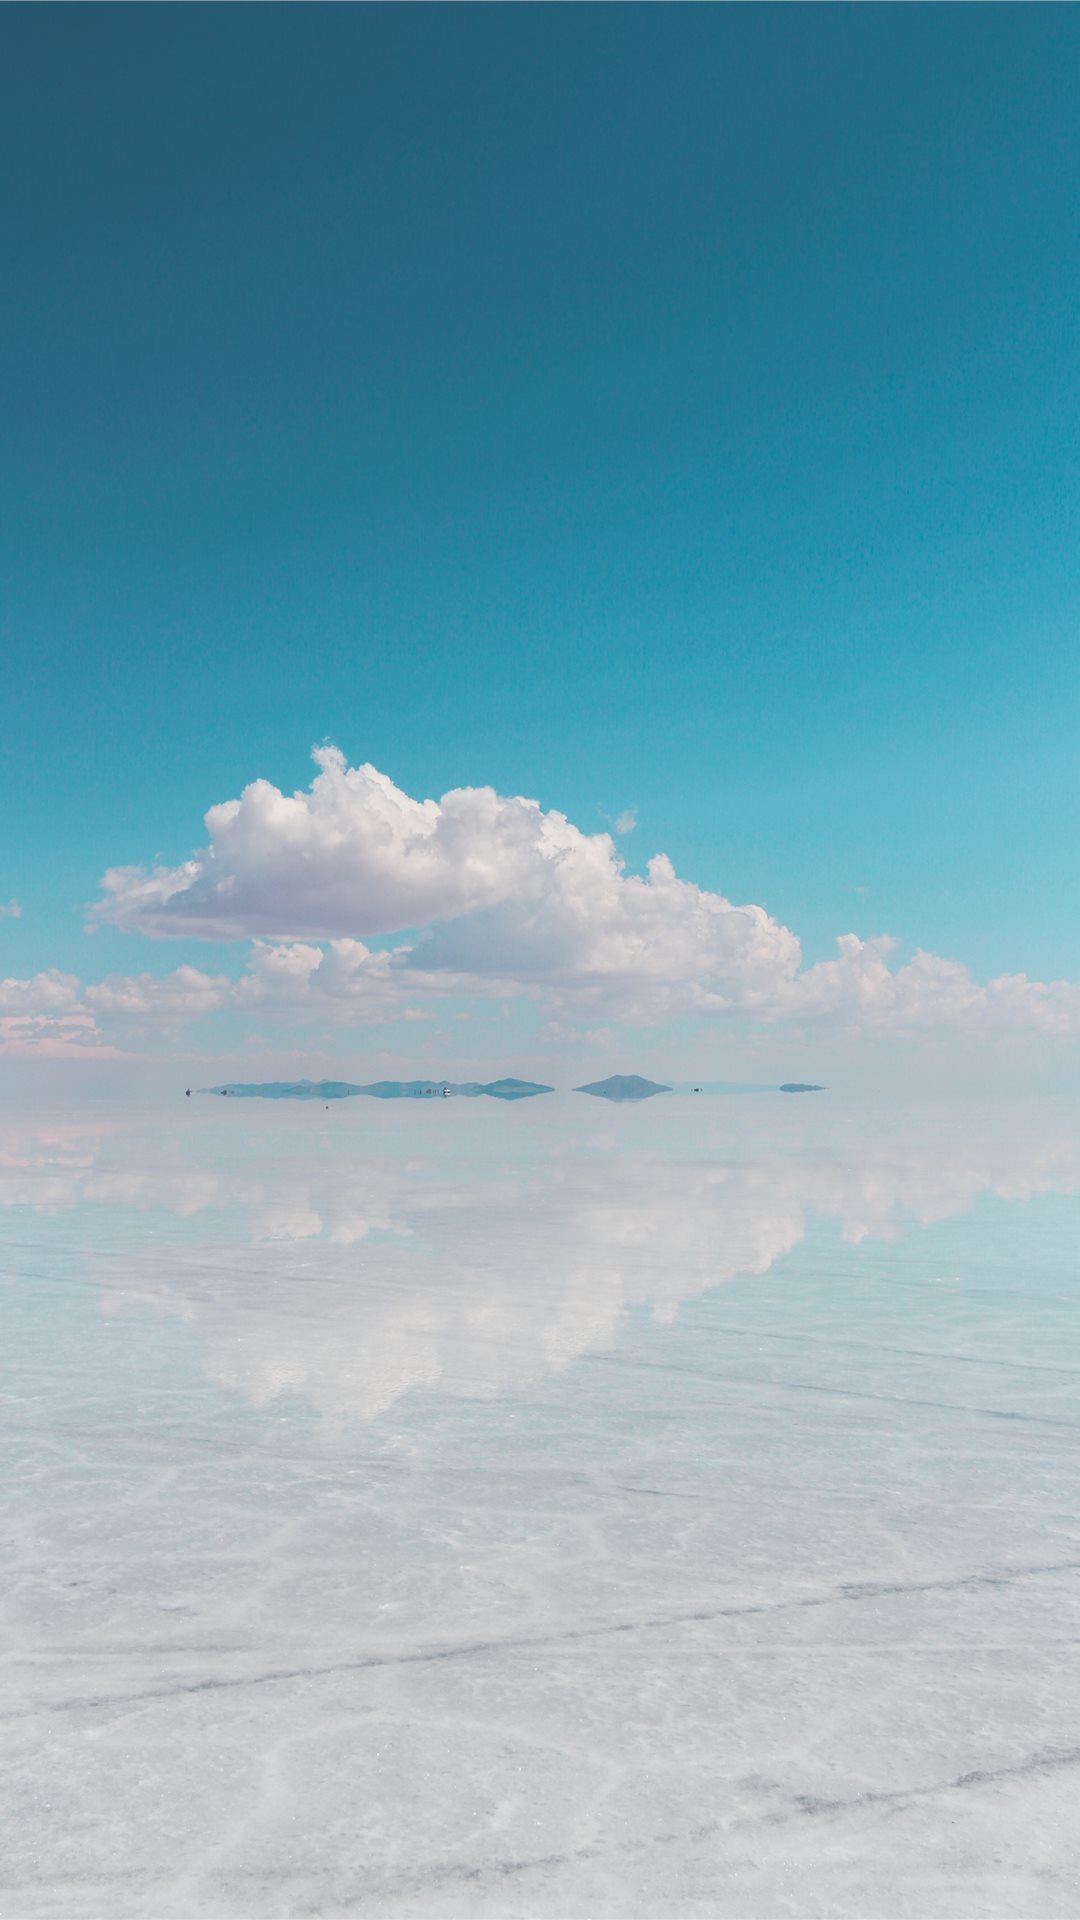 鏡のように美しいウユニ塩湖 Iphone11 スマホ壁紙 待受画像ギャラリー